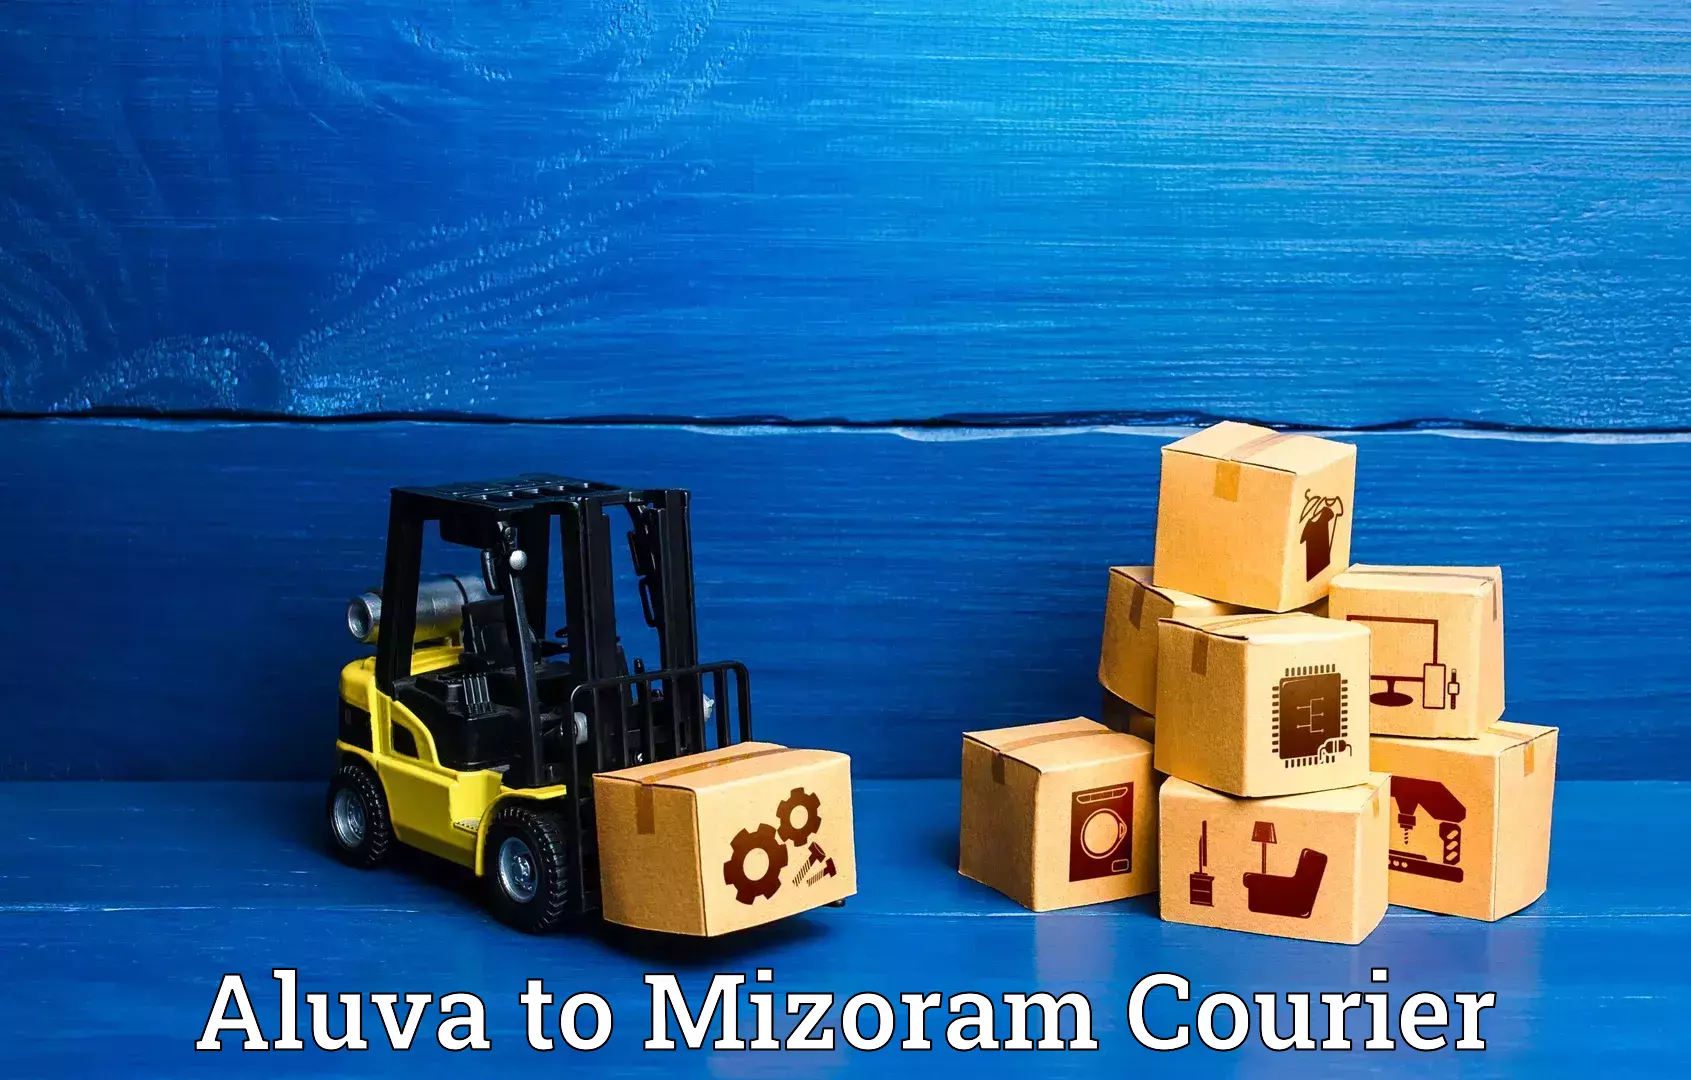 Urgent luggage shipment in Aluva to Mizoram